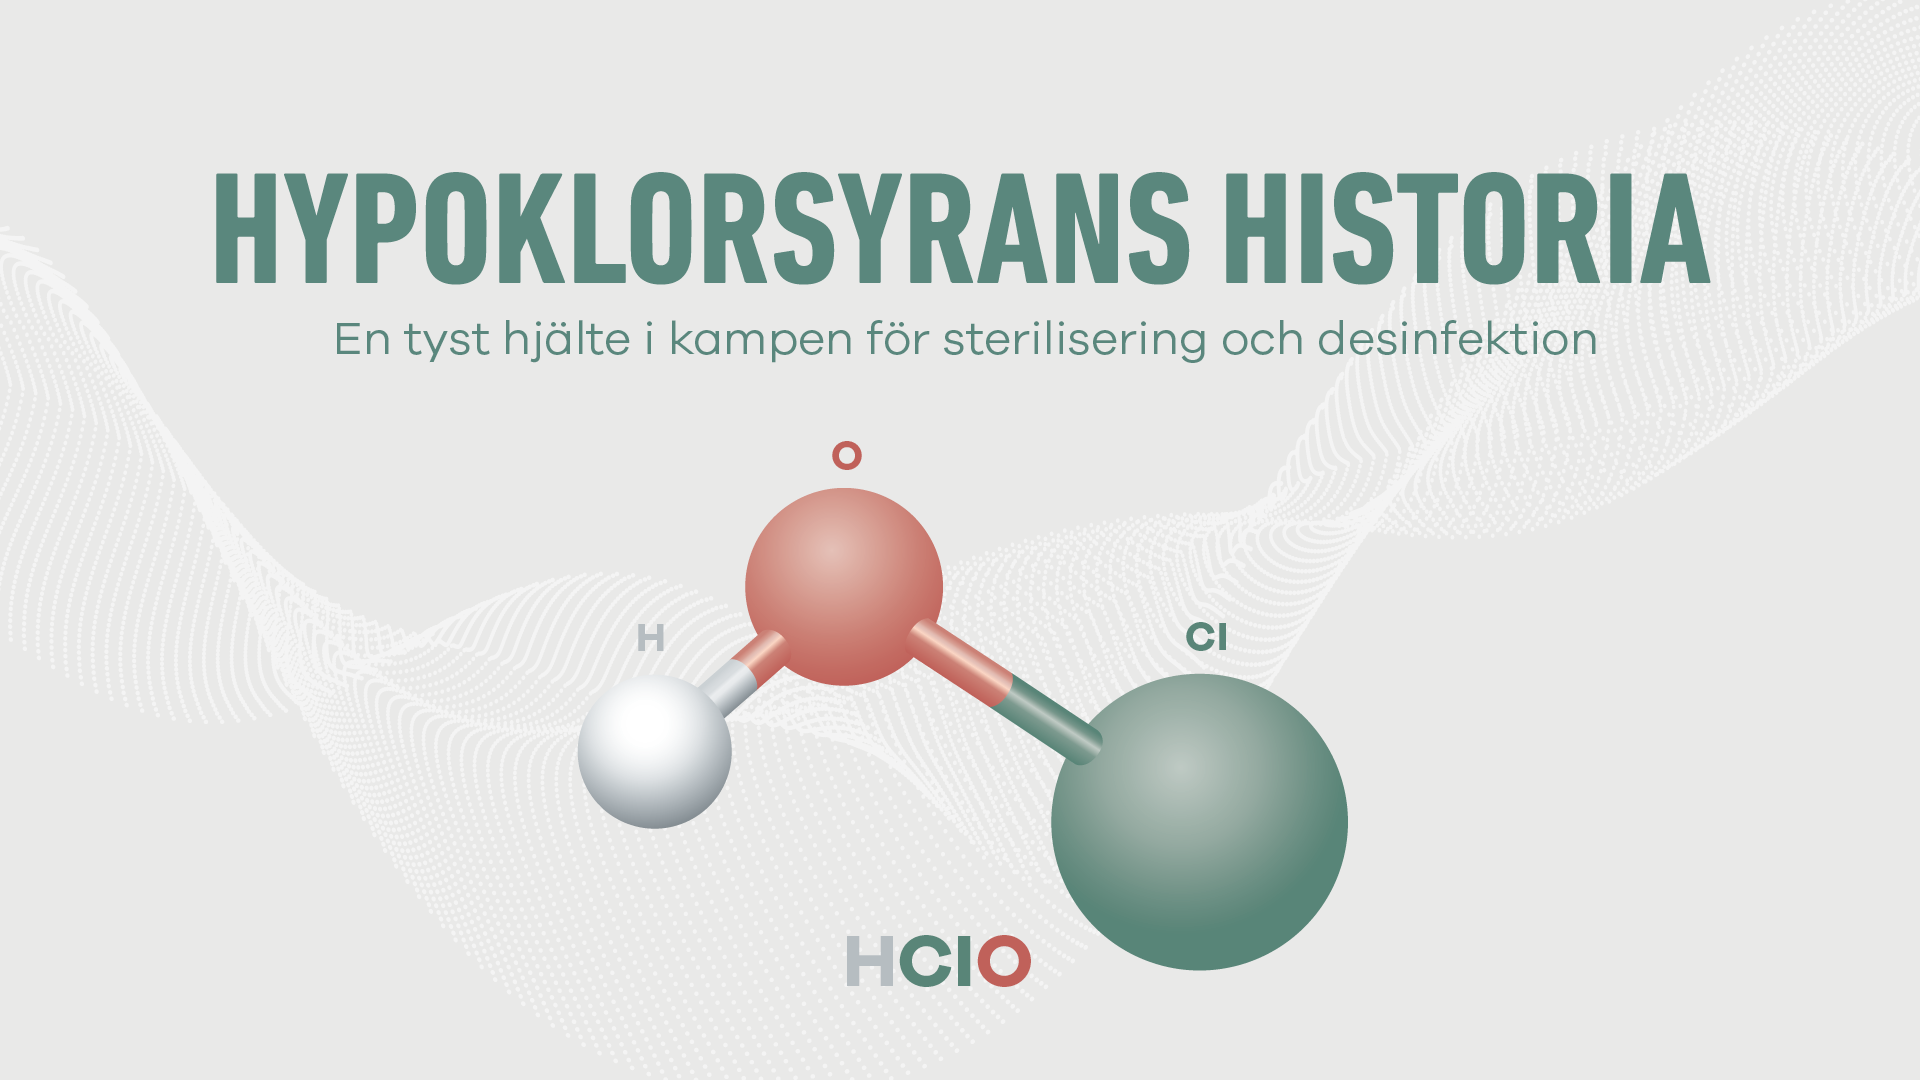 Hypoklorsyrans historia